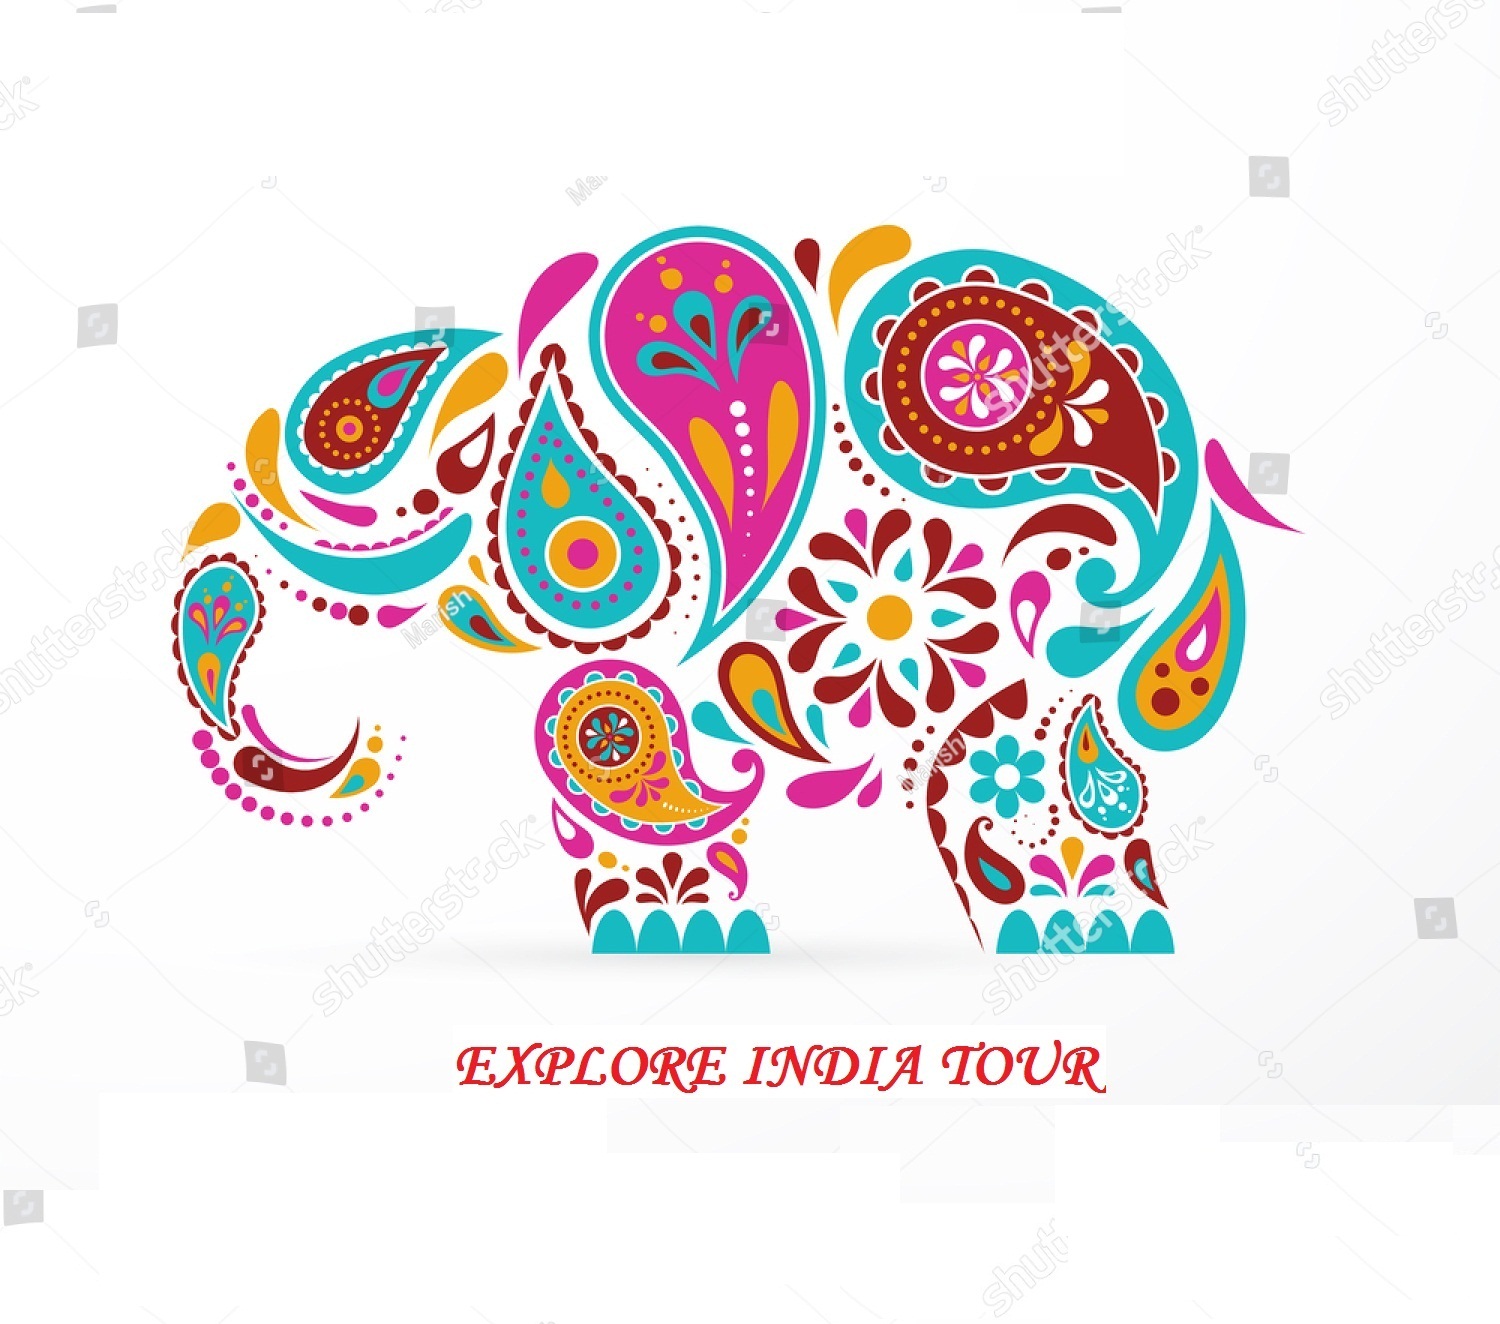 Explore India Tour